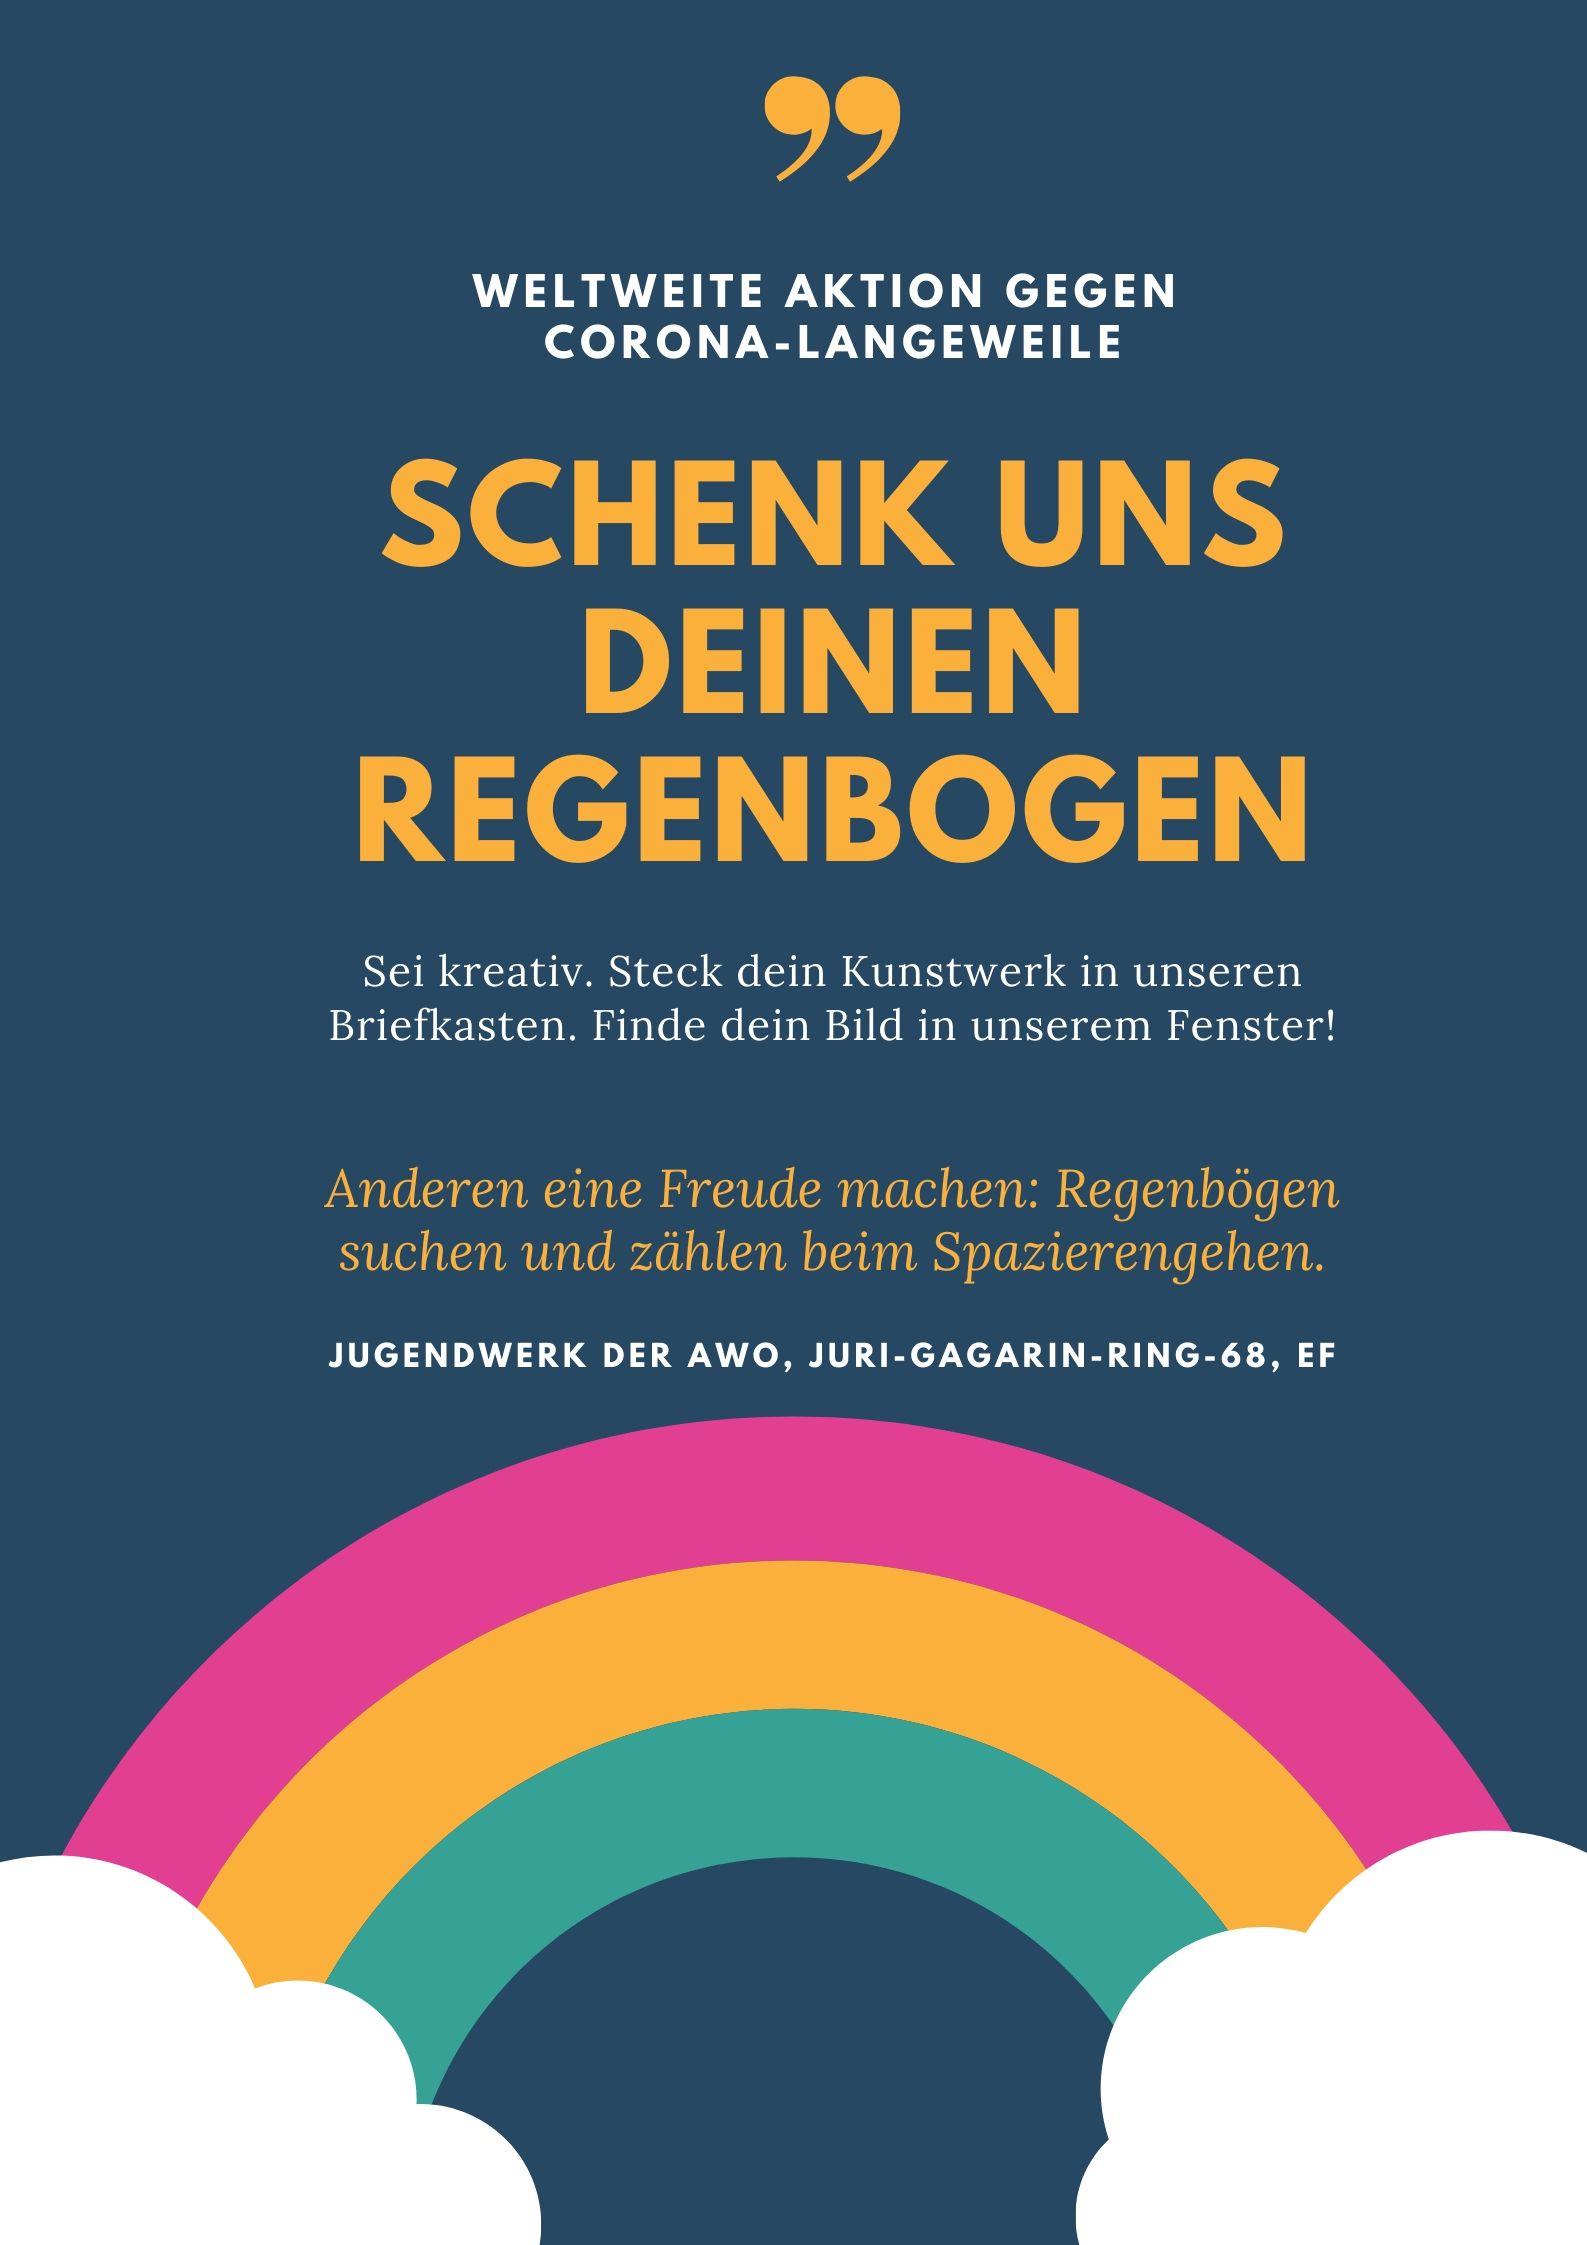 Regenbogen-Aktion in Erfurt